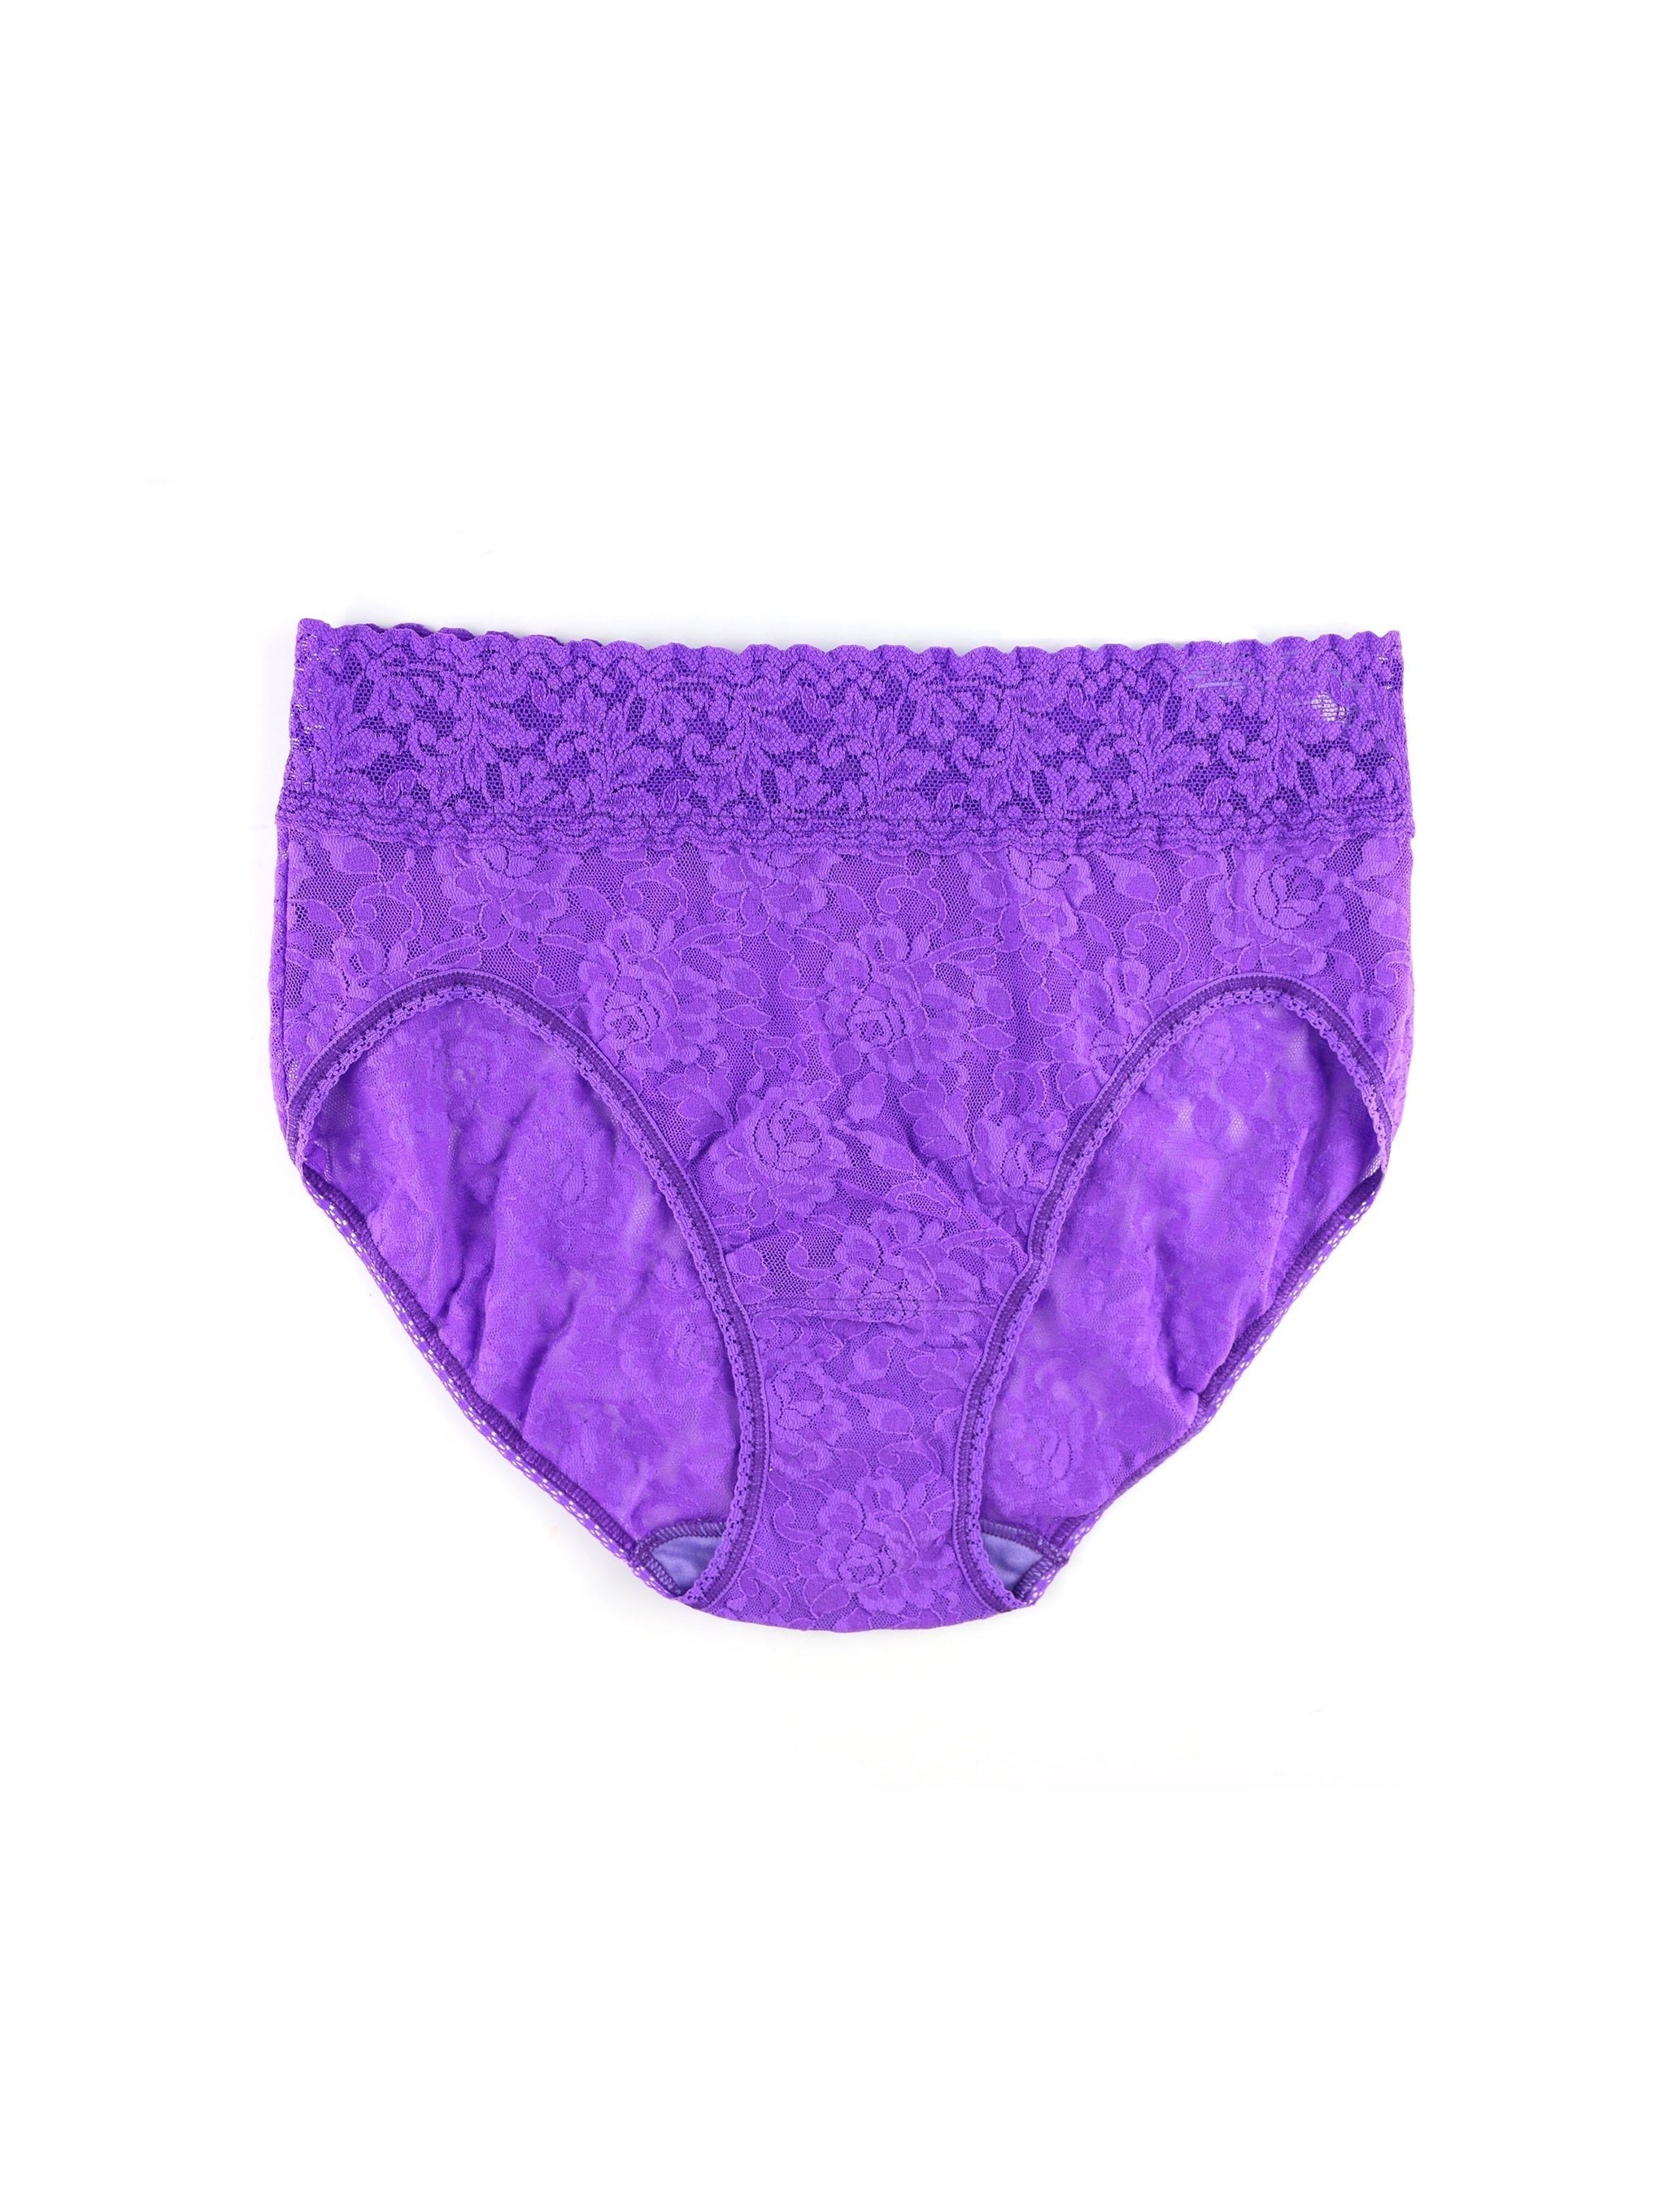 Signature Lace French Brief Vivid Violet Purple Sale